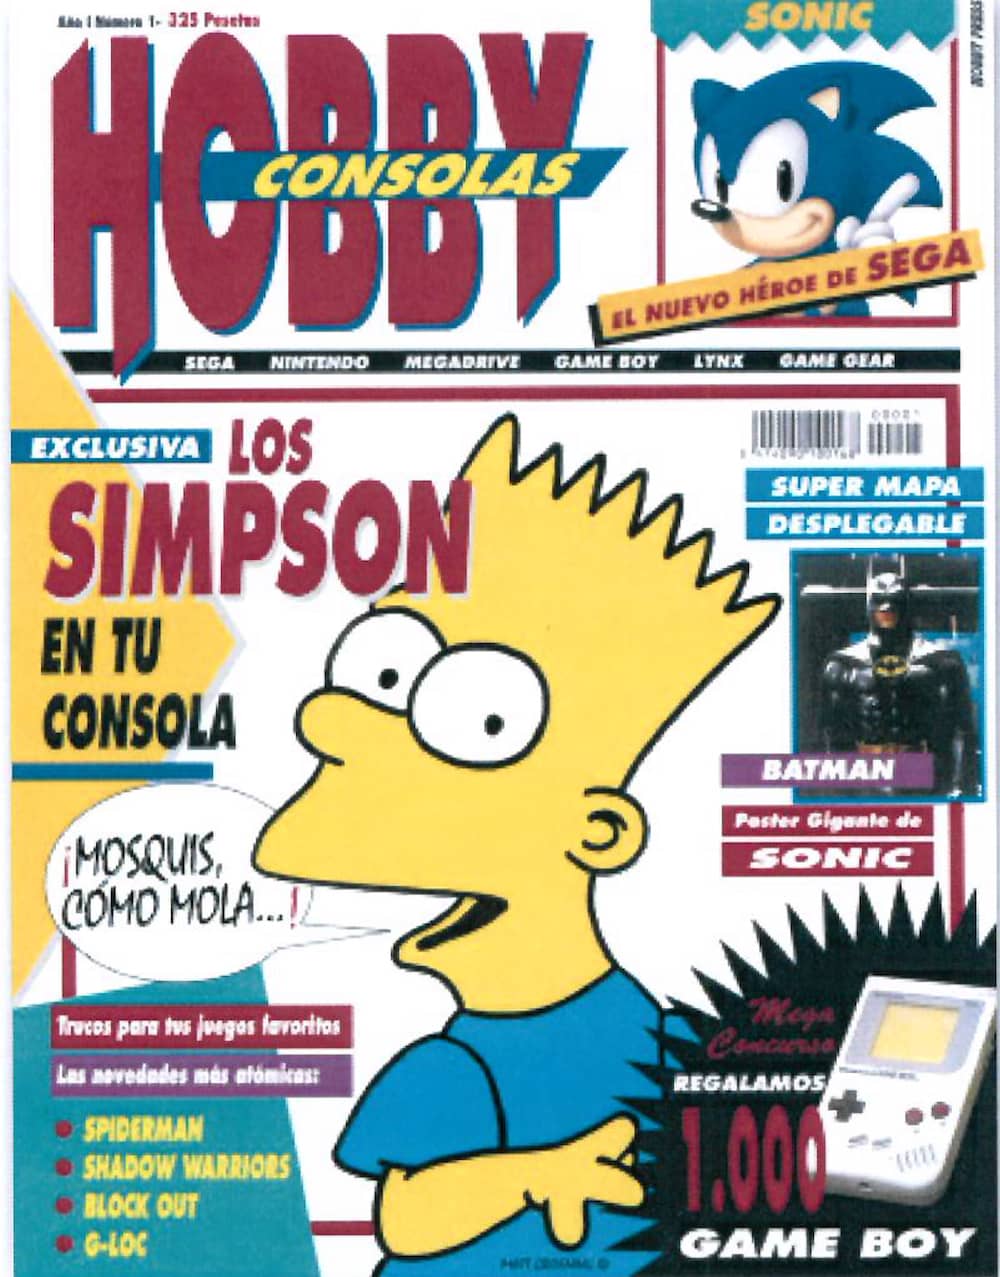 ¡MOSQUIS COMO MOLA! LA HISTORIA DE HOBBY CONSOLAS 1991-2001